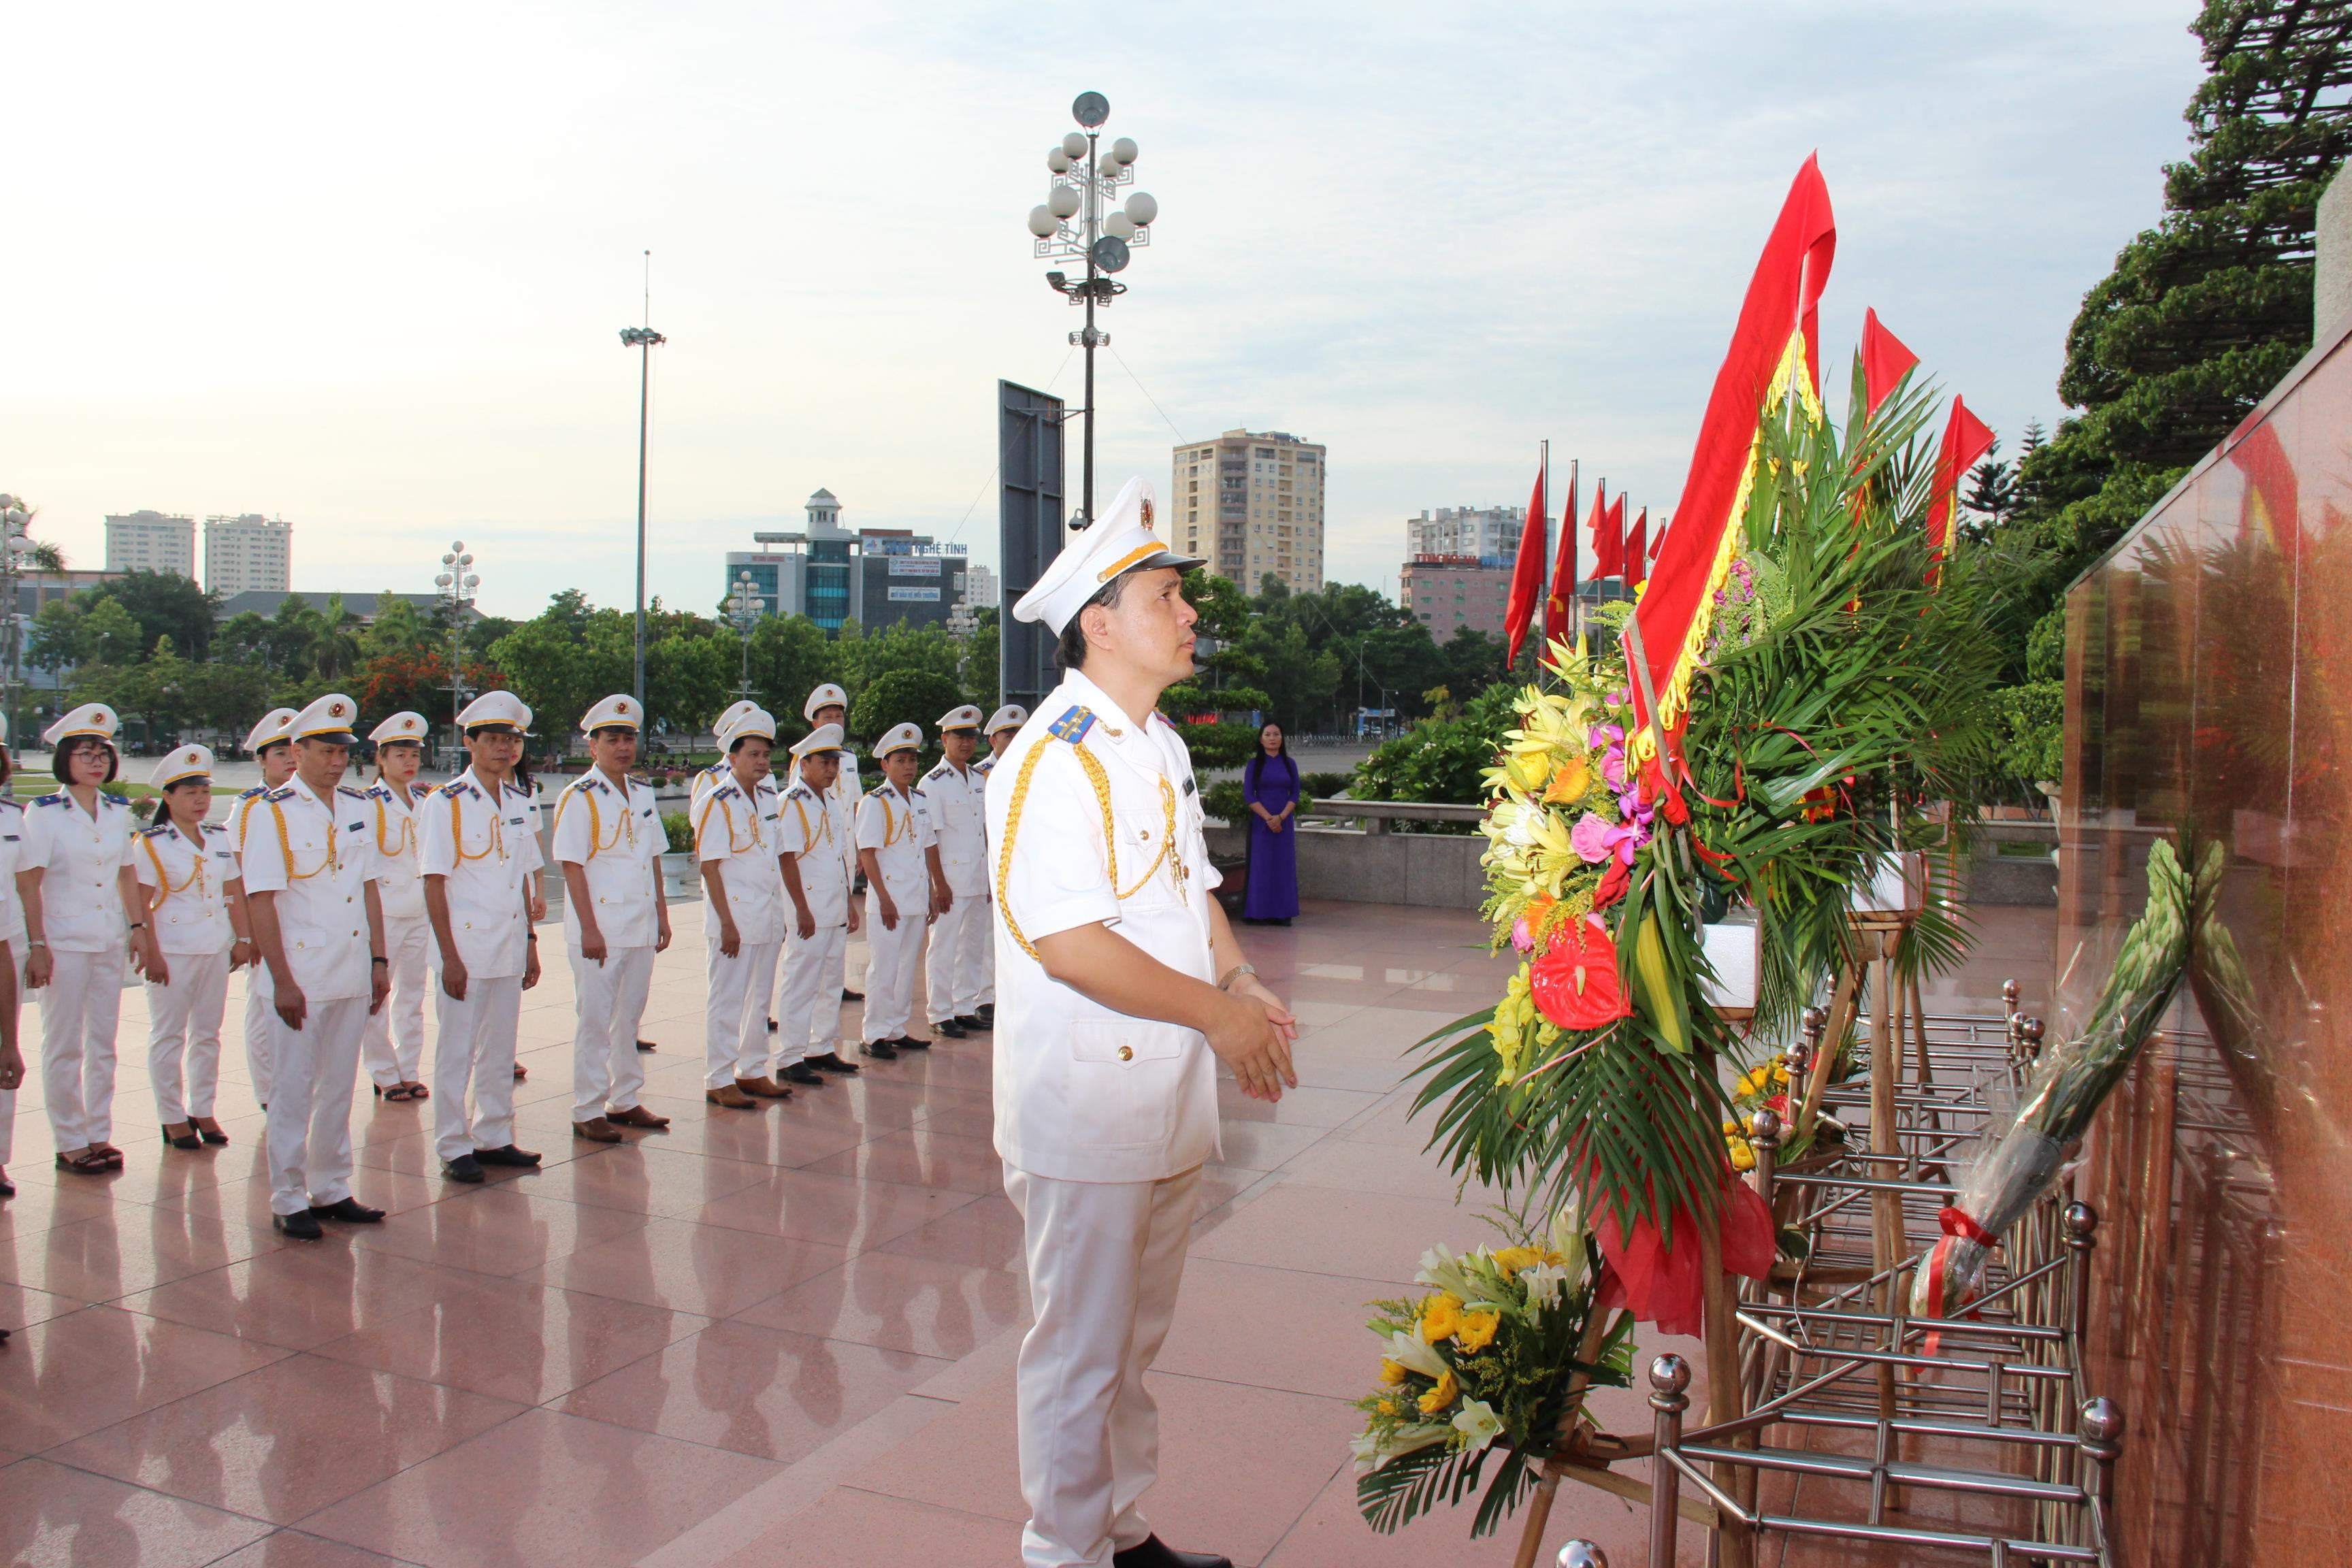 Cục trưởng Cục Thi hành án dân sự tỉnh Phạm Quốc Nam dâng hoa lên anh linh của Bác Hồ tại Quảng trường Hồ Chí Minh, TP Vinh. Ảnh: Hoài Thu